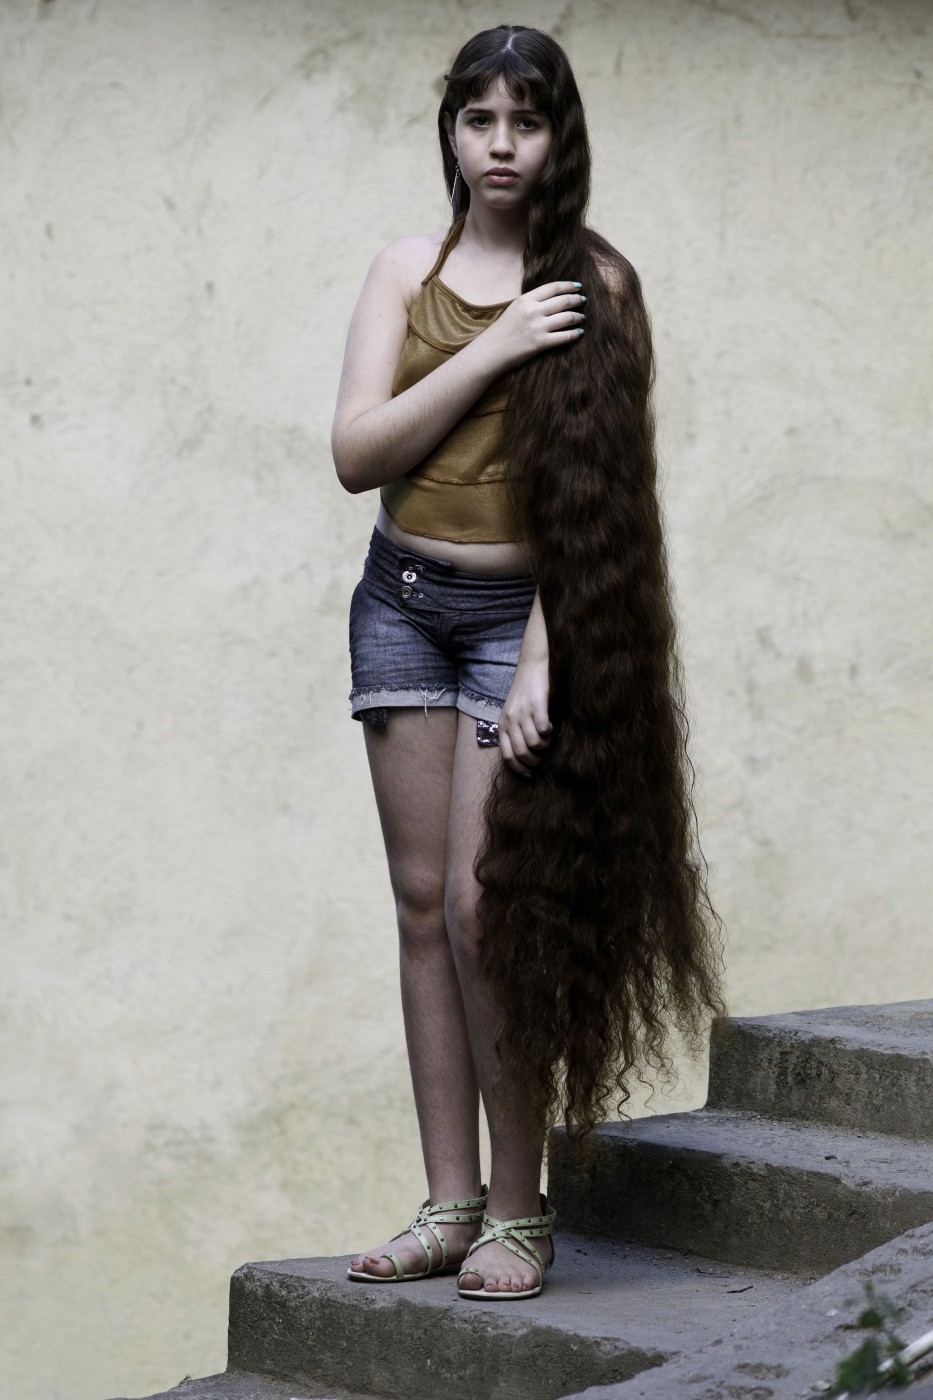 Brazil 4 12 летняя Рапунцель из Бразилии продаст косу, чтобы сделать ремонт в квартире